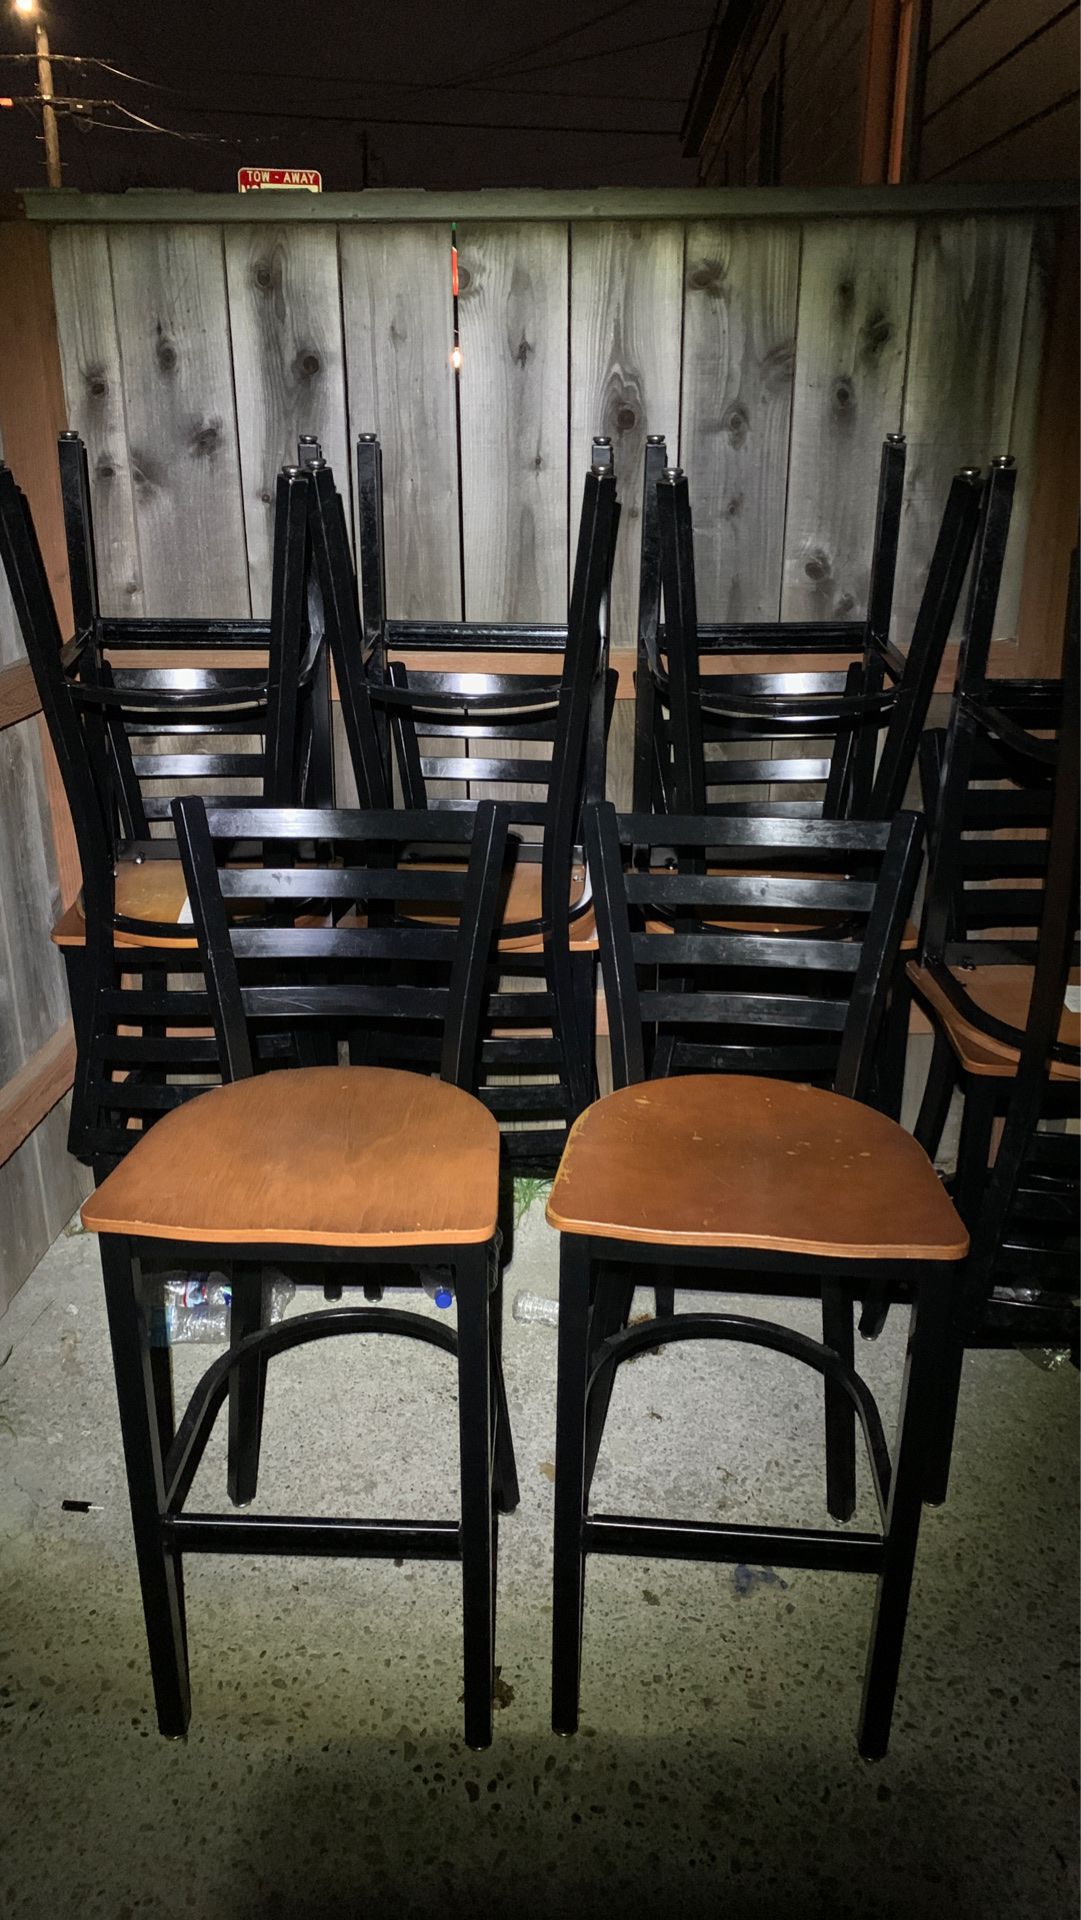 Bar chairs / high chairs $5 each chair